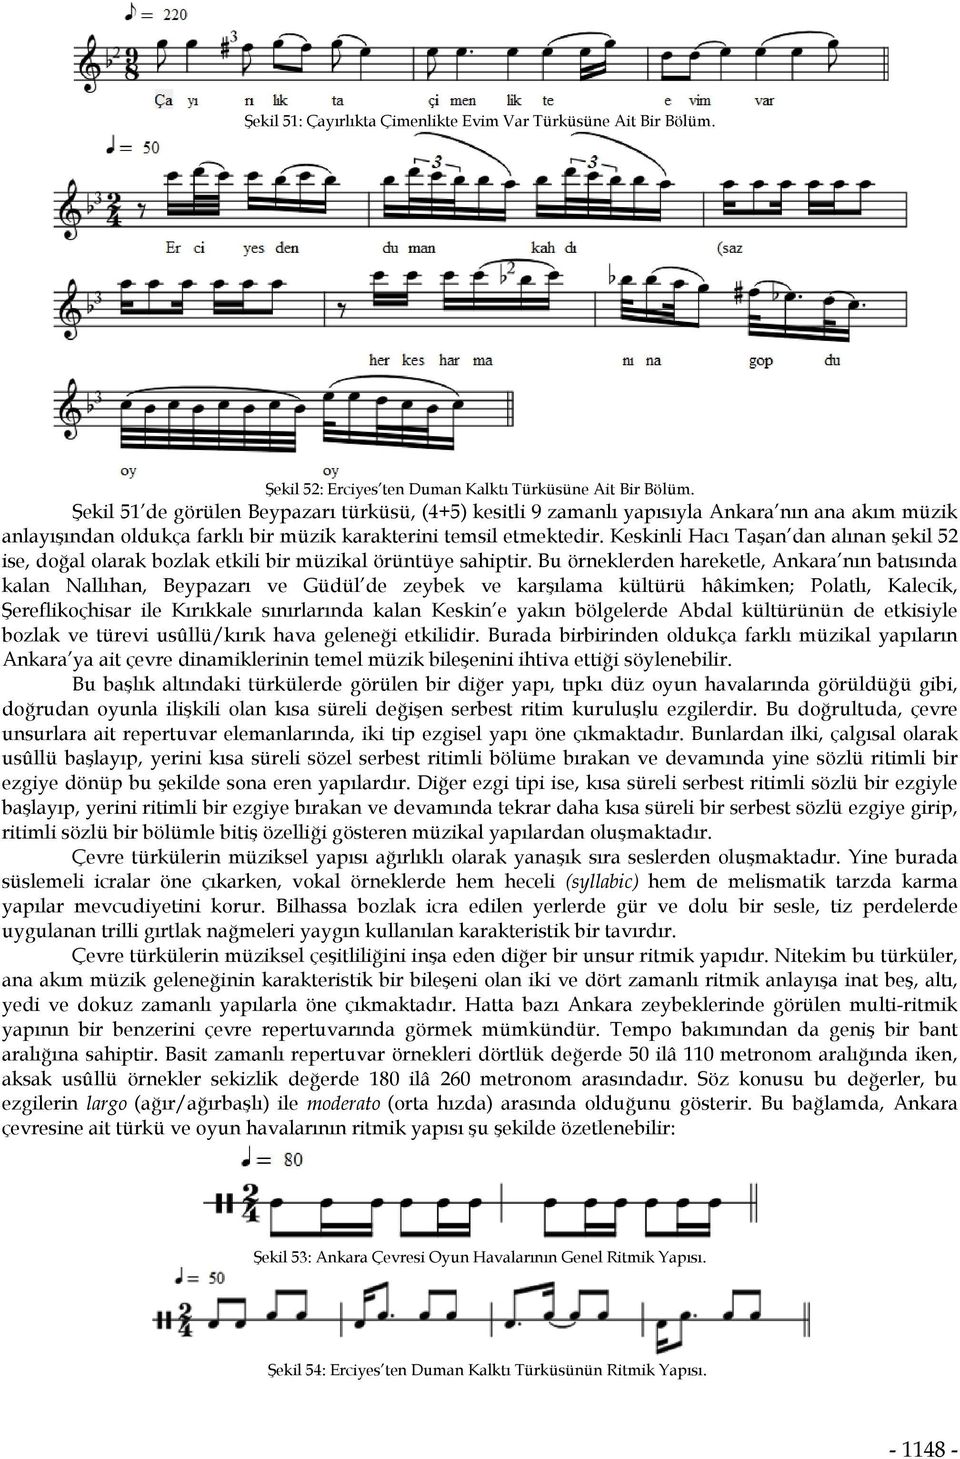 Keskinli Hacı Taşan dan alınan şekil 52 ise, doğal olarak bozlak etkili bir müzikal örüntüye sahiptir.